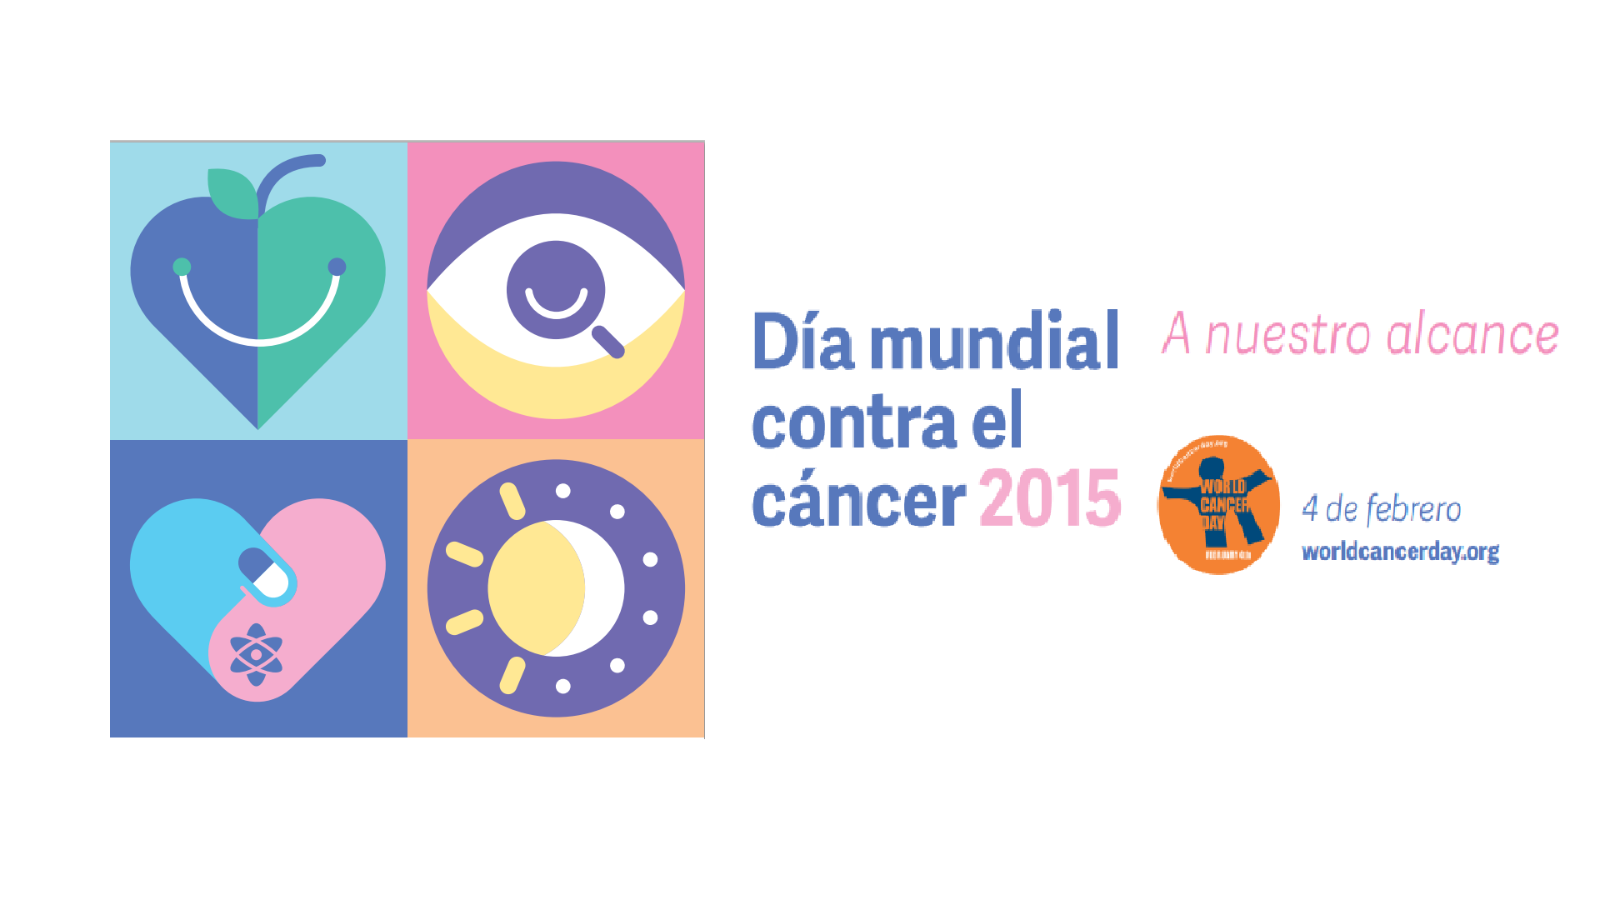 Texto "Día Mundial contra el Cáncer" y "2015" con un logotipo